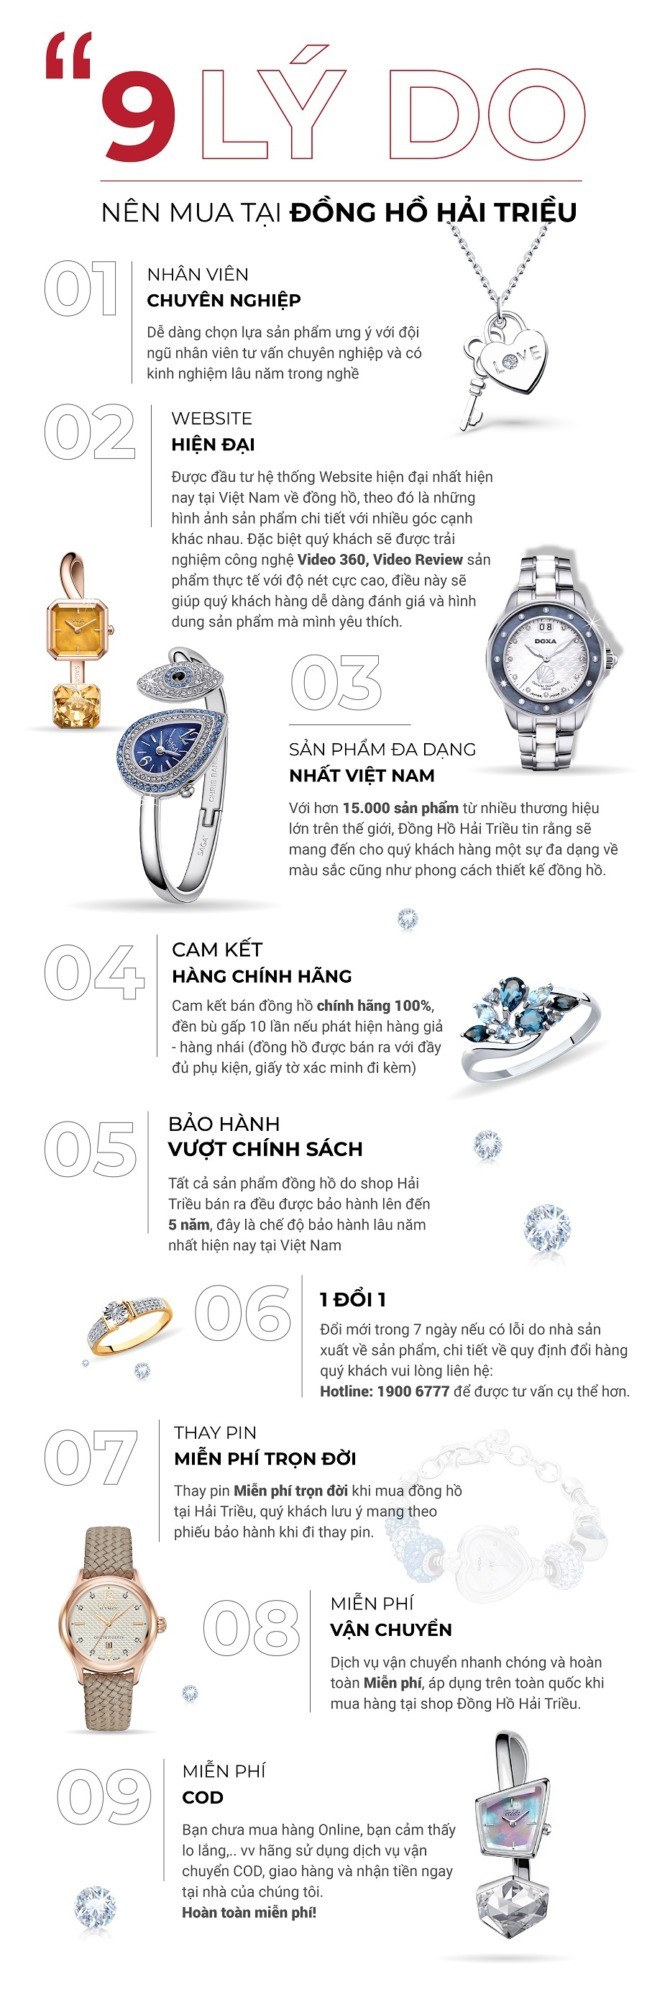 9 lý do nên mua đồng hồ Citizen tại Hải Triều